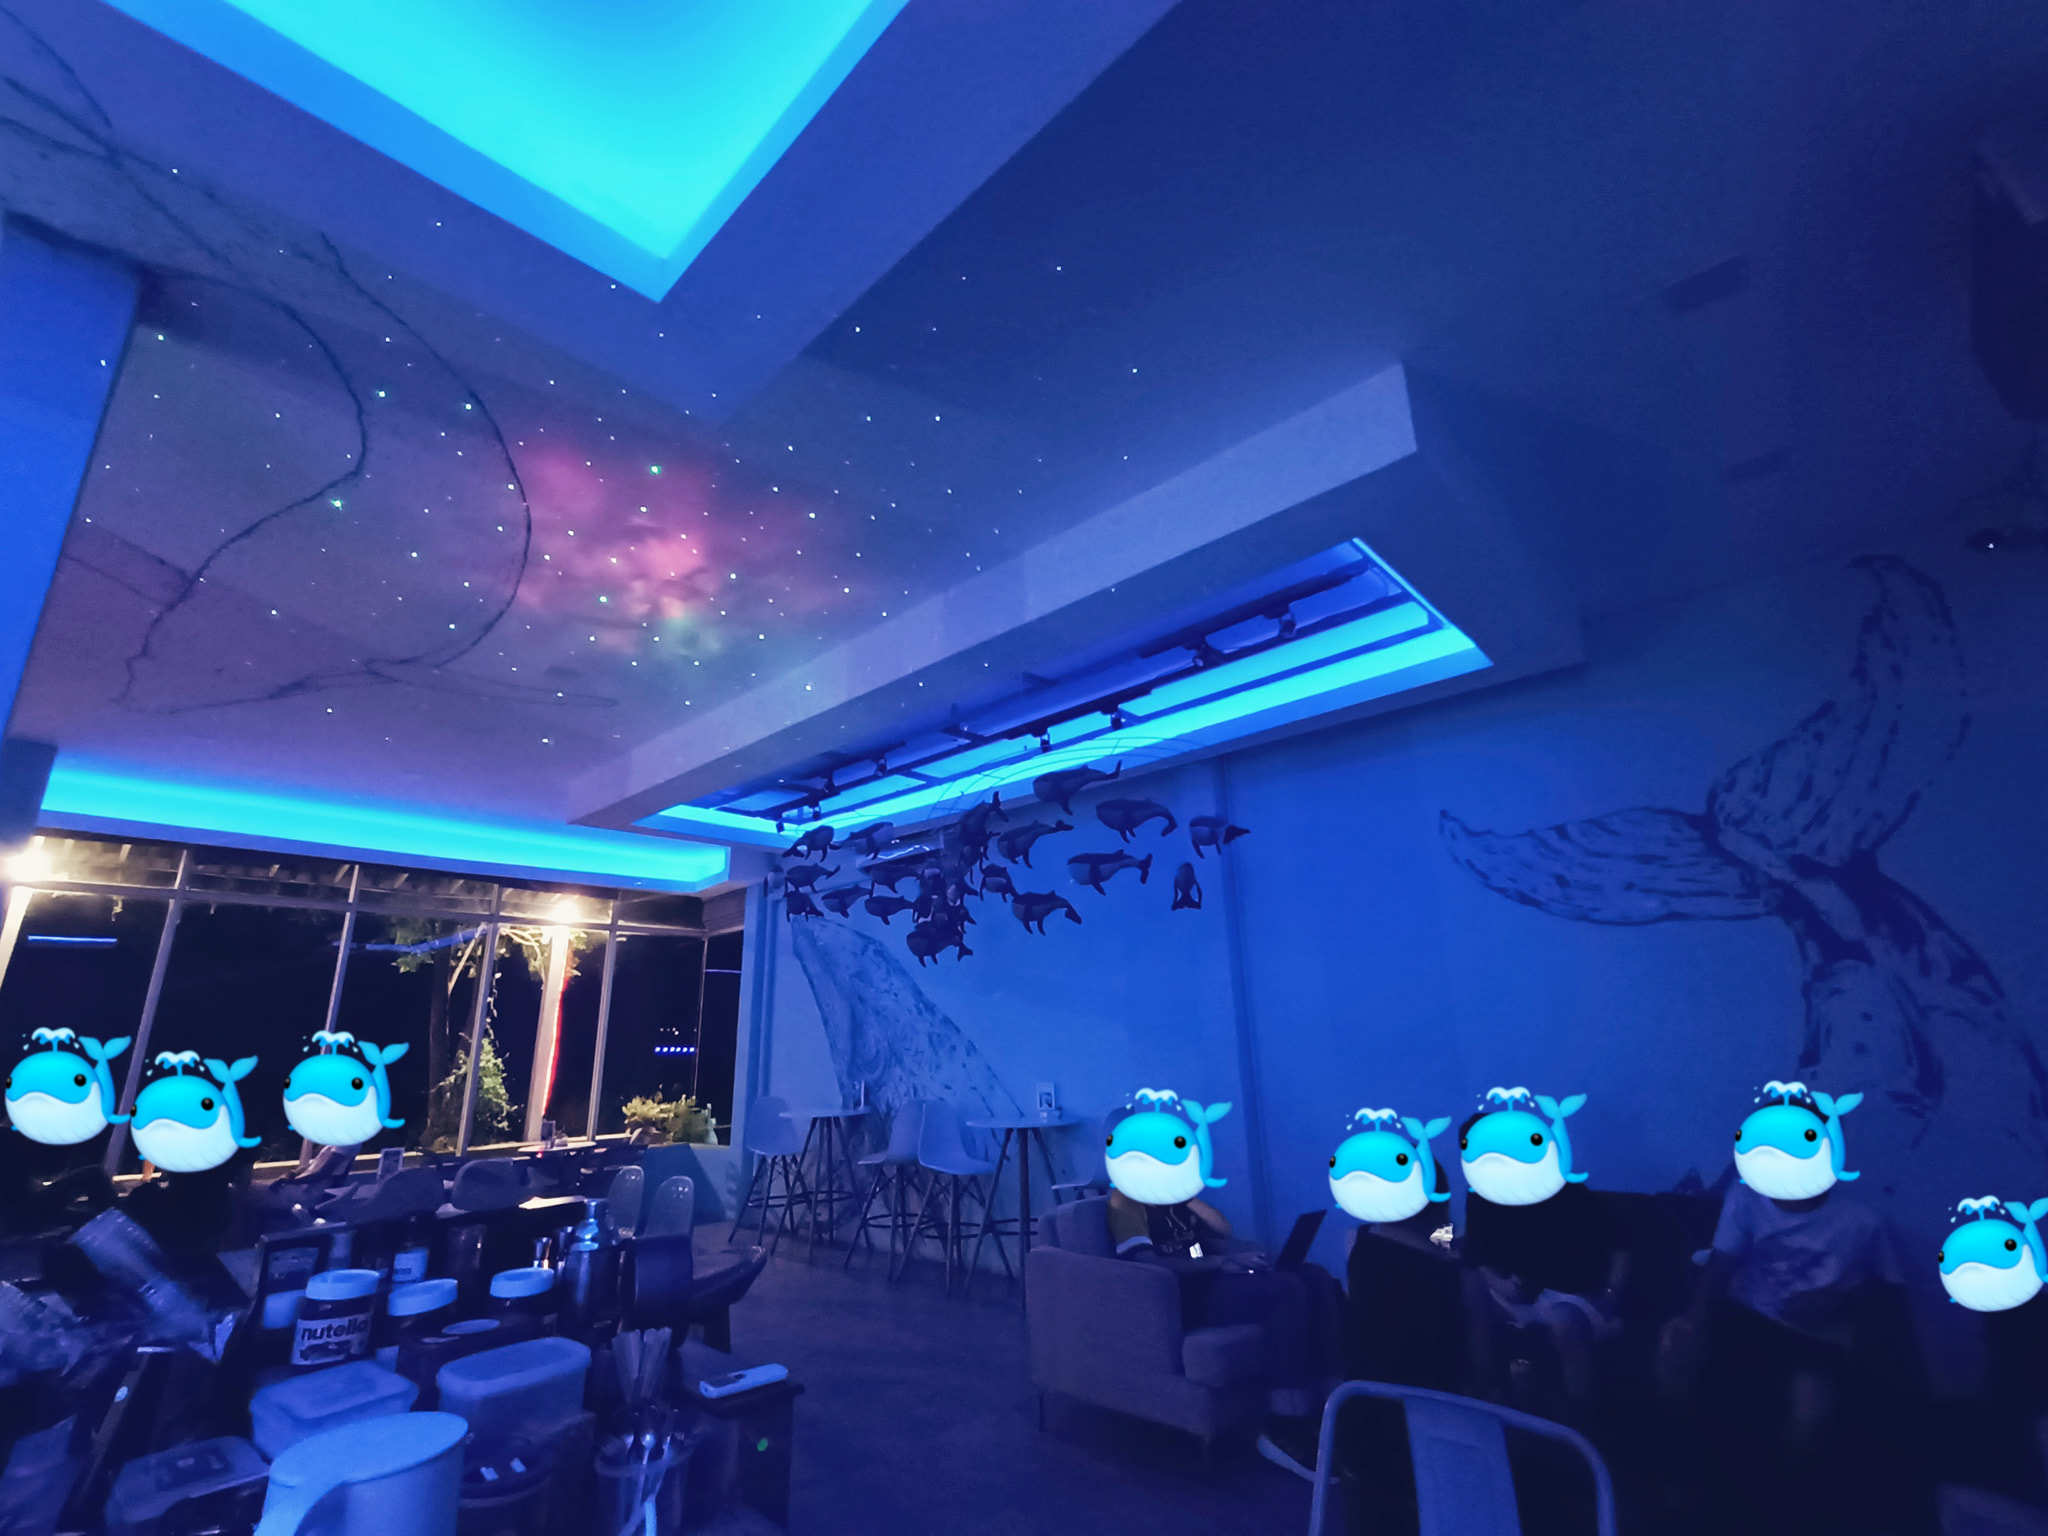 สวนอาหาร ชีวาฬคาเฟ่ มหาสารคาม (Whale space cafe) : มหาสารคาม (Maha Sarakham)